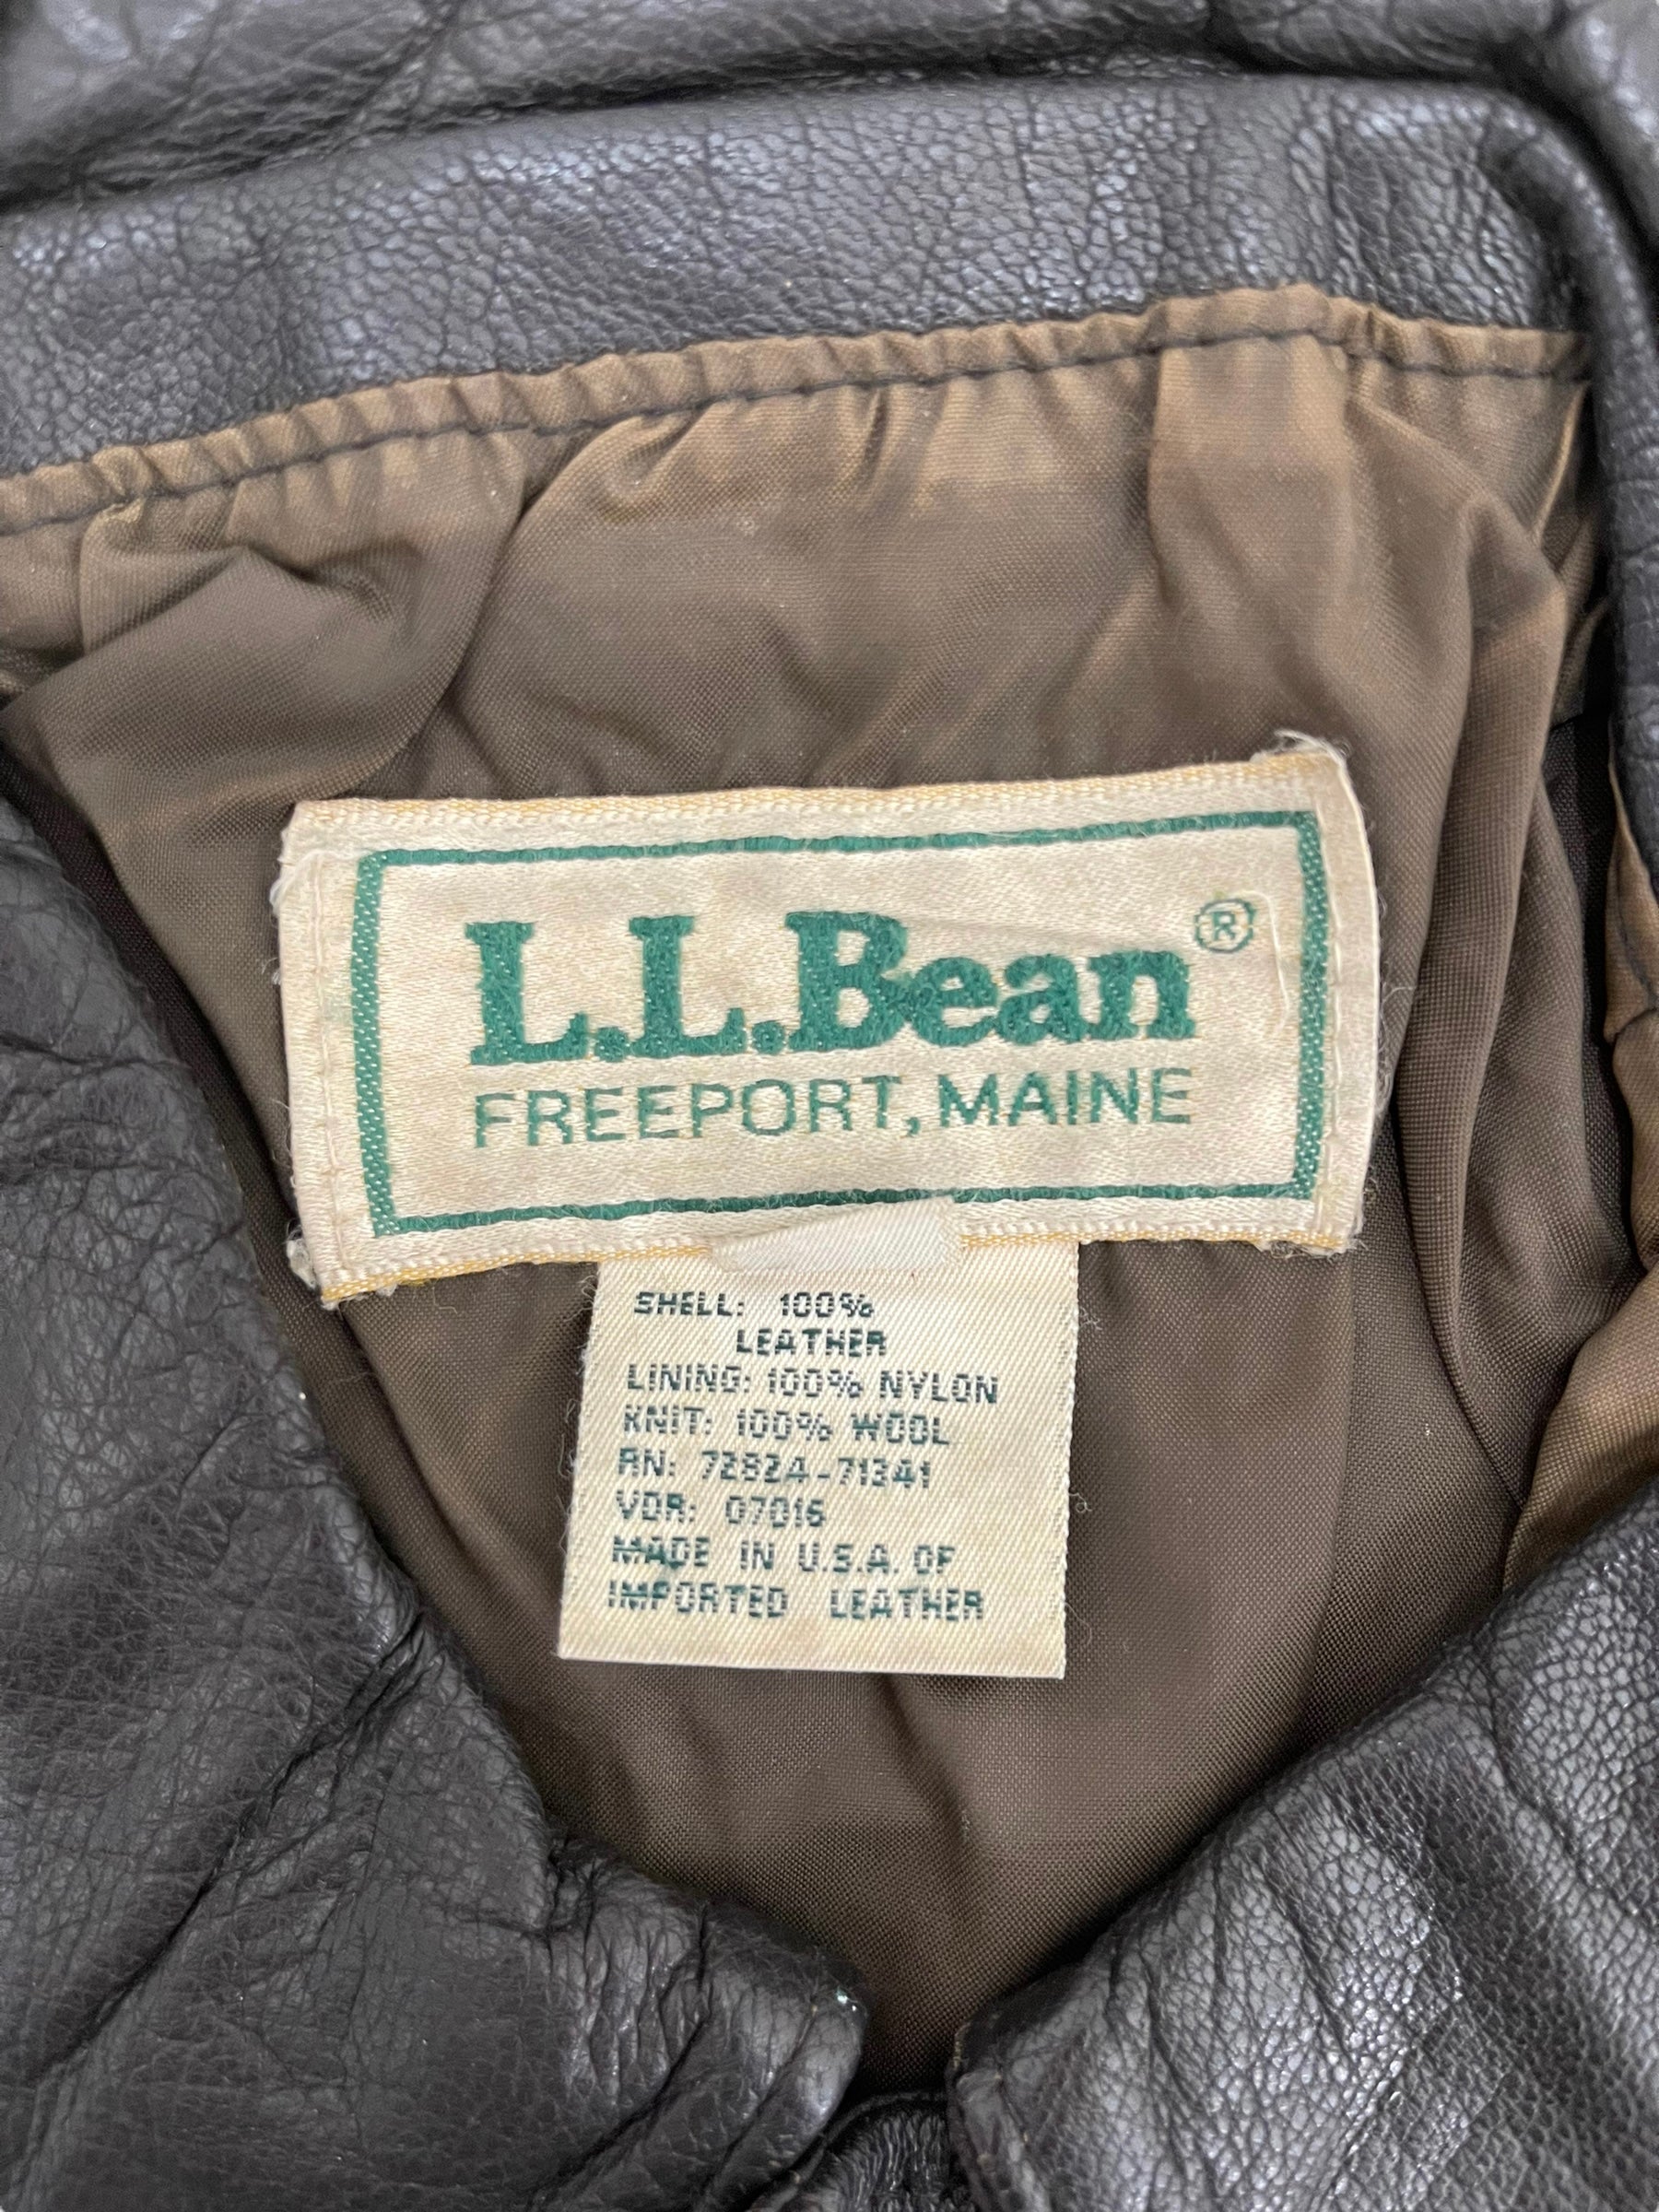 GC72 L.L.Bean 80s A-2 type レザージャケット ブラウン メンズ サイズ40